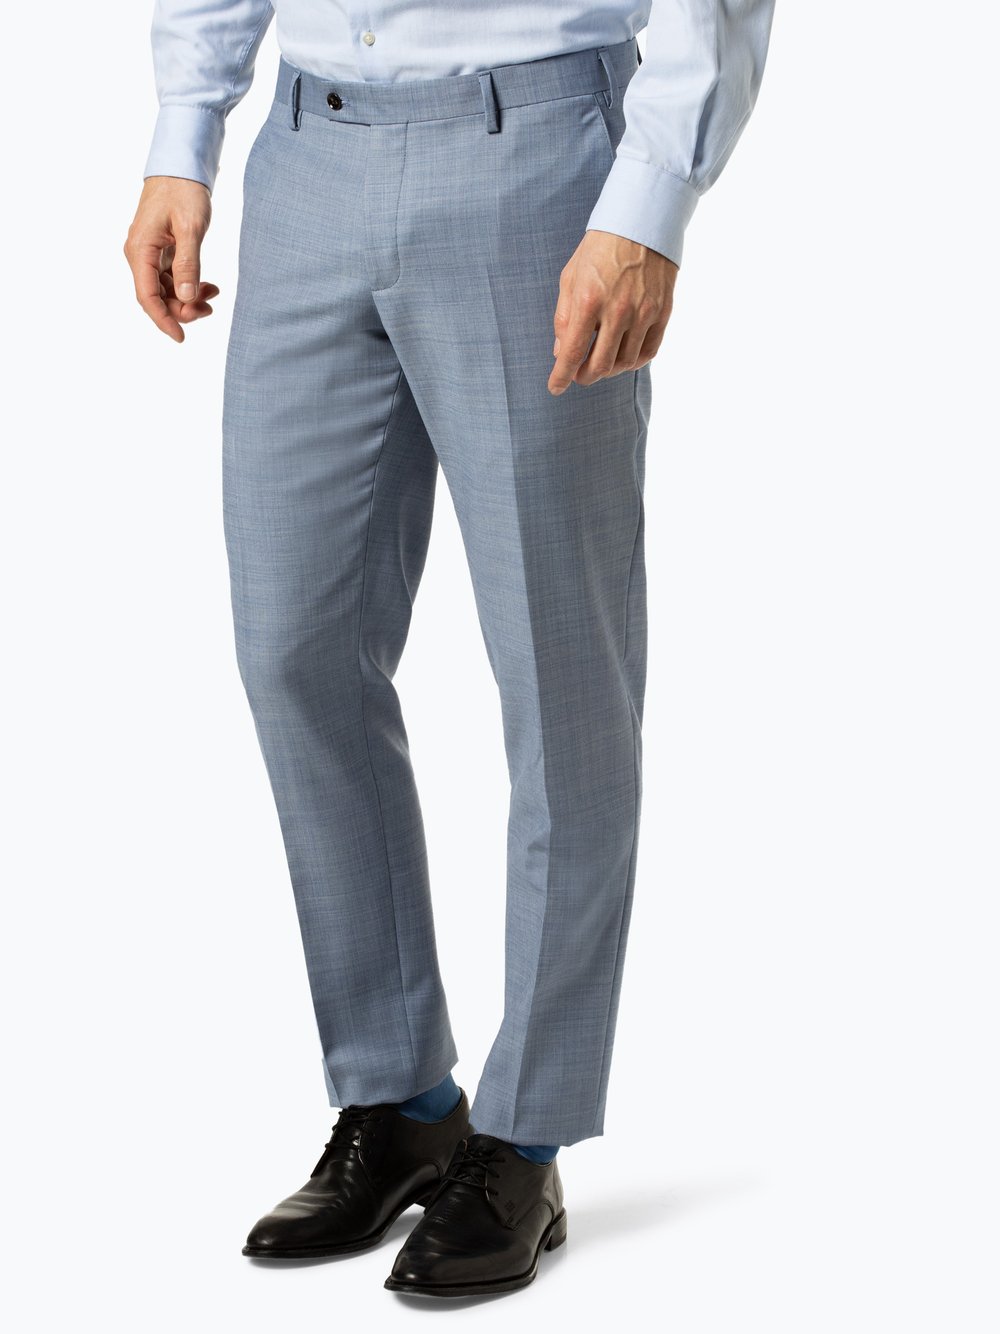 Finshley & Harding - Męskie spodnie od garnituru modułowego – Black Label -  Mitch, niebieski Finshley & Harding